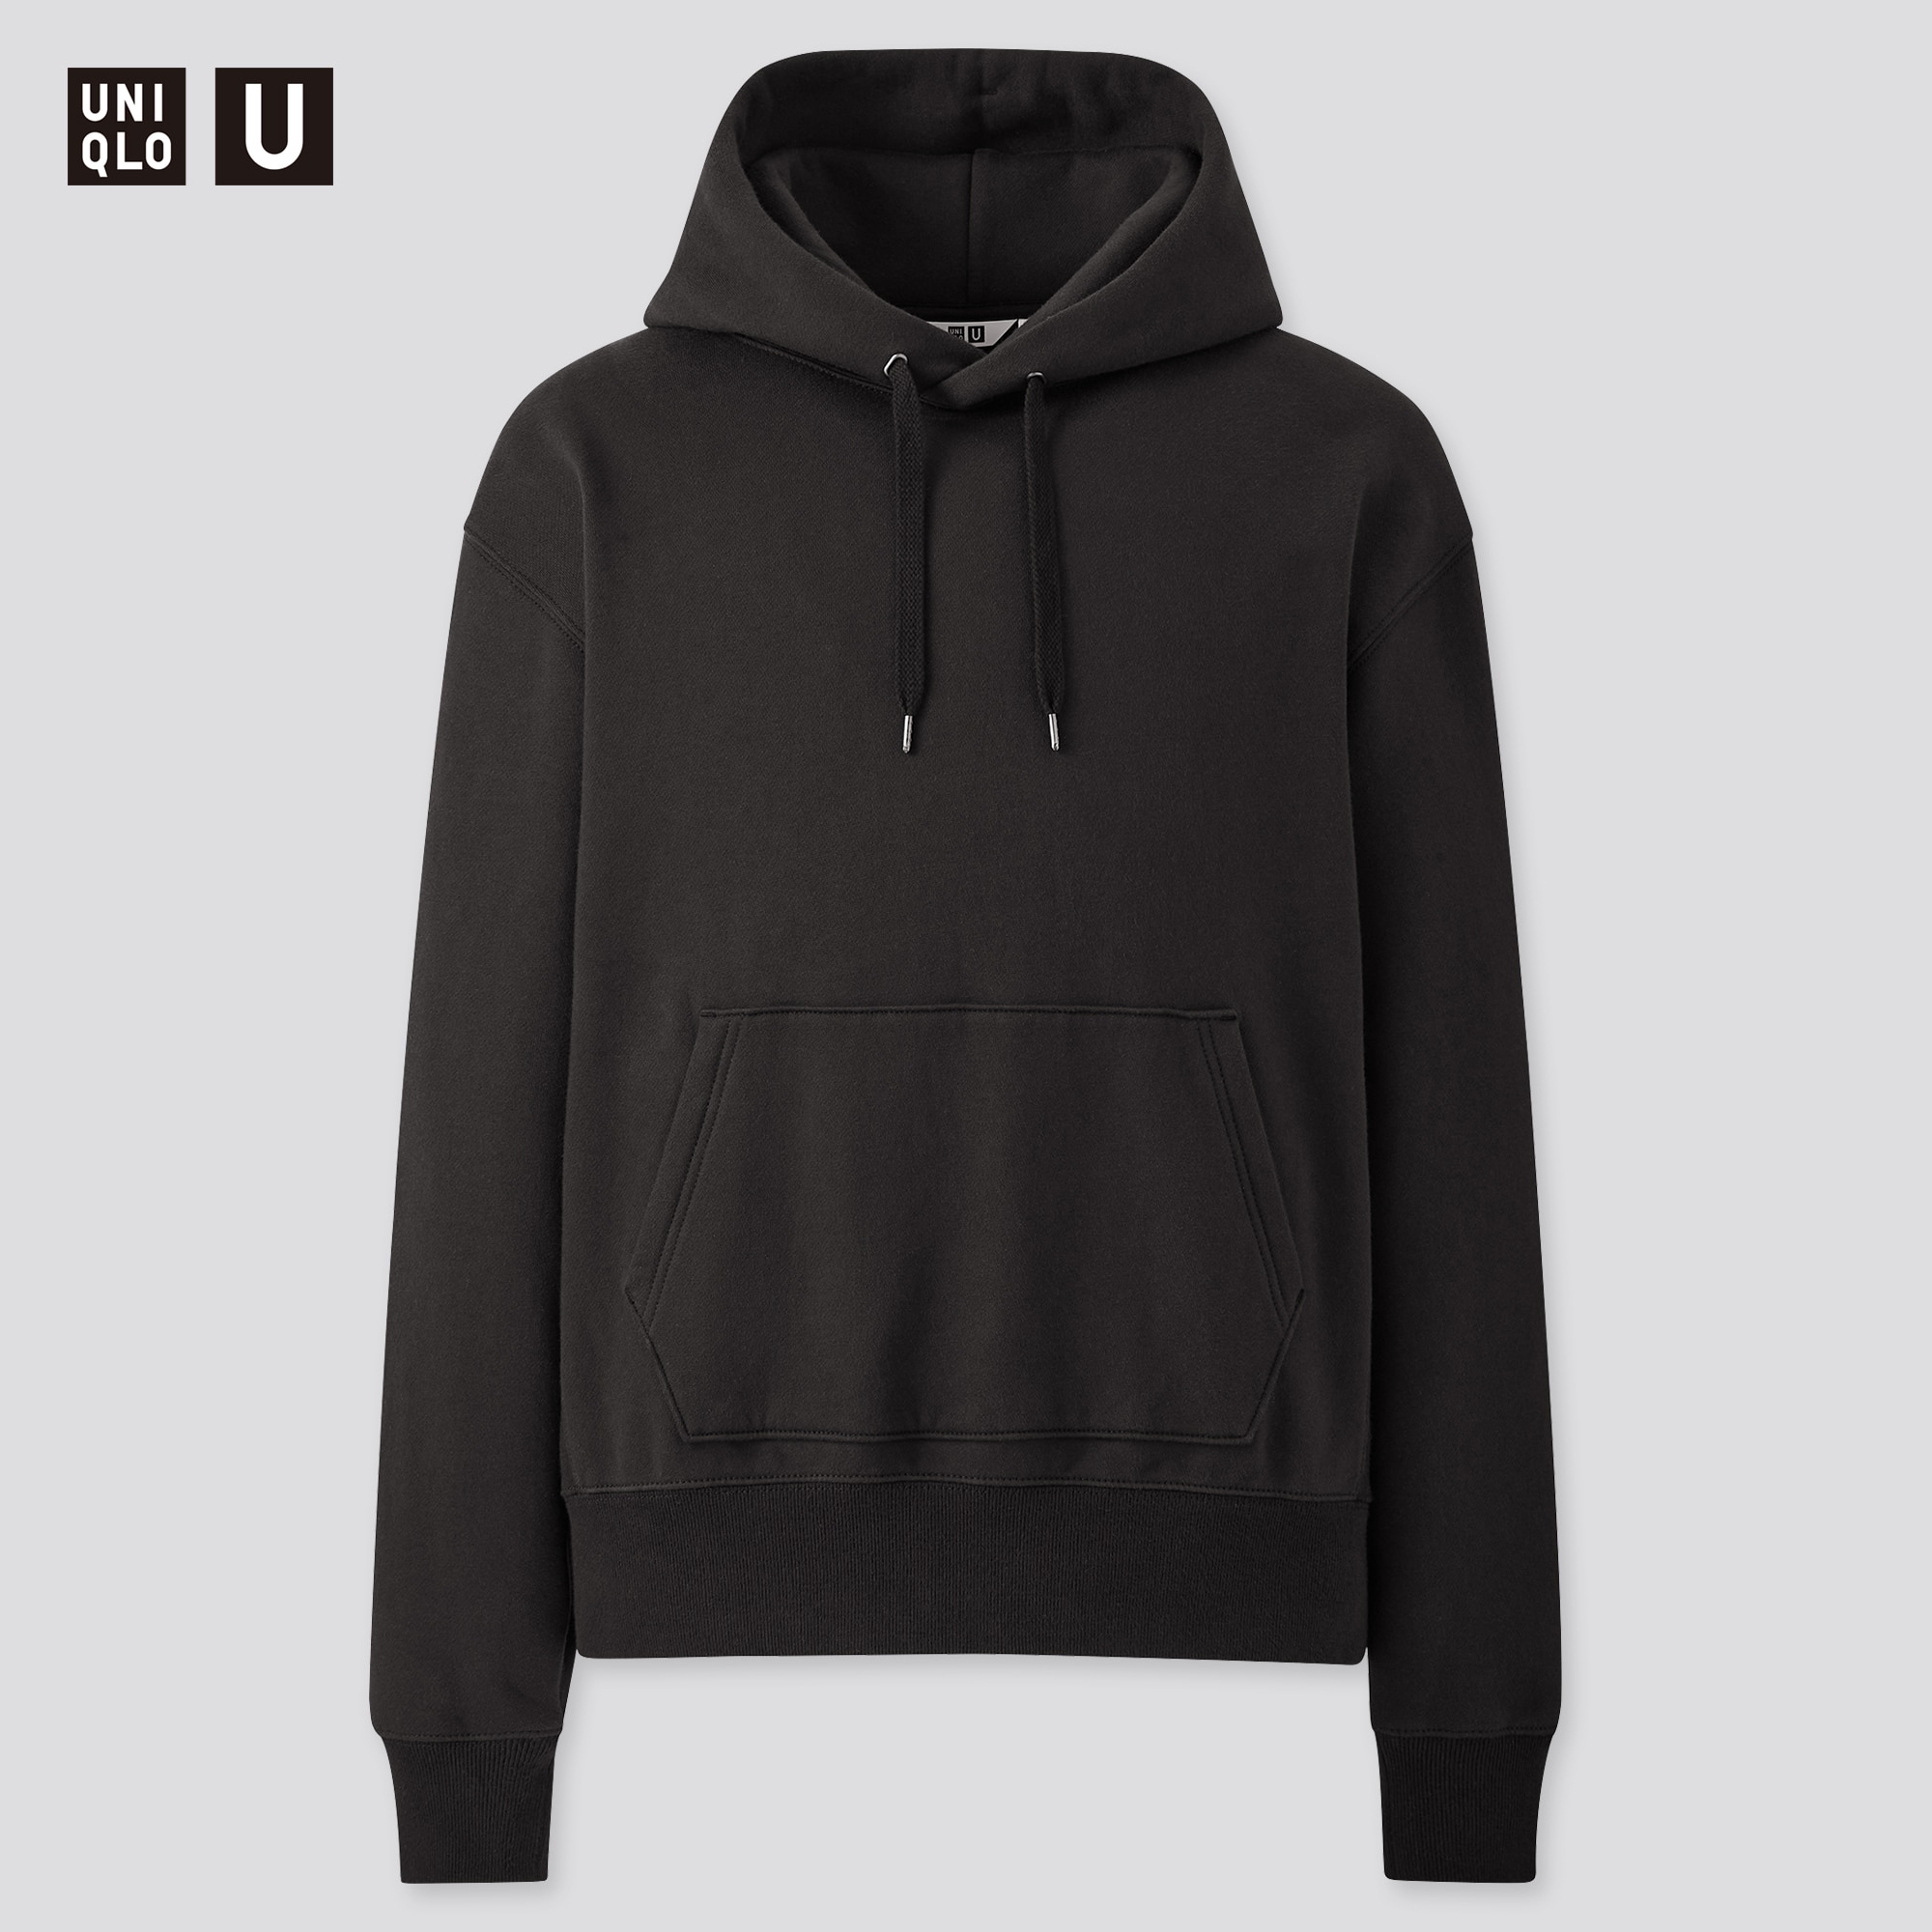 hoodies under $10